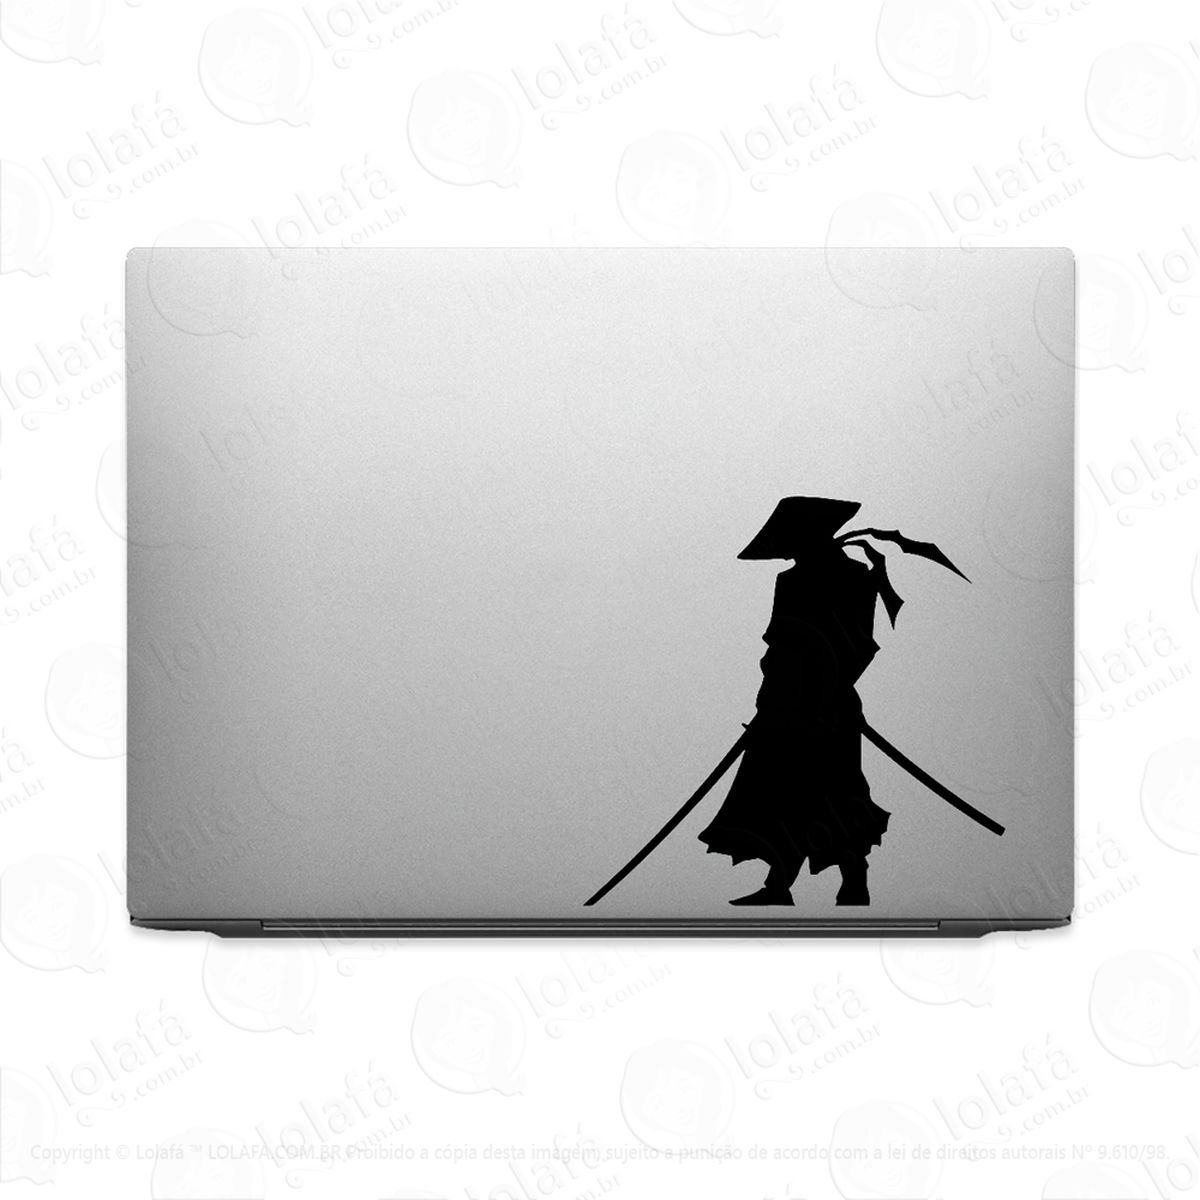 adesivo tablet notebook pc samurai guerreiro armado mod:2051